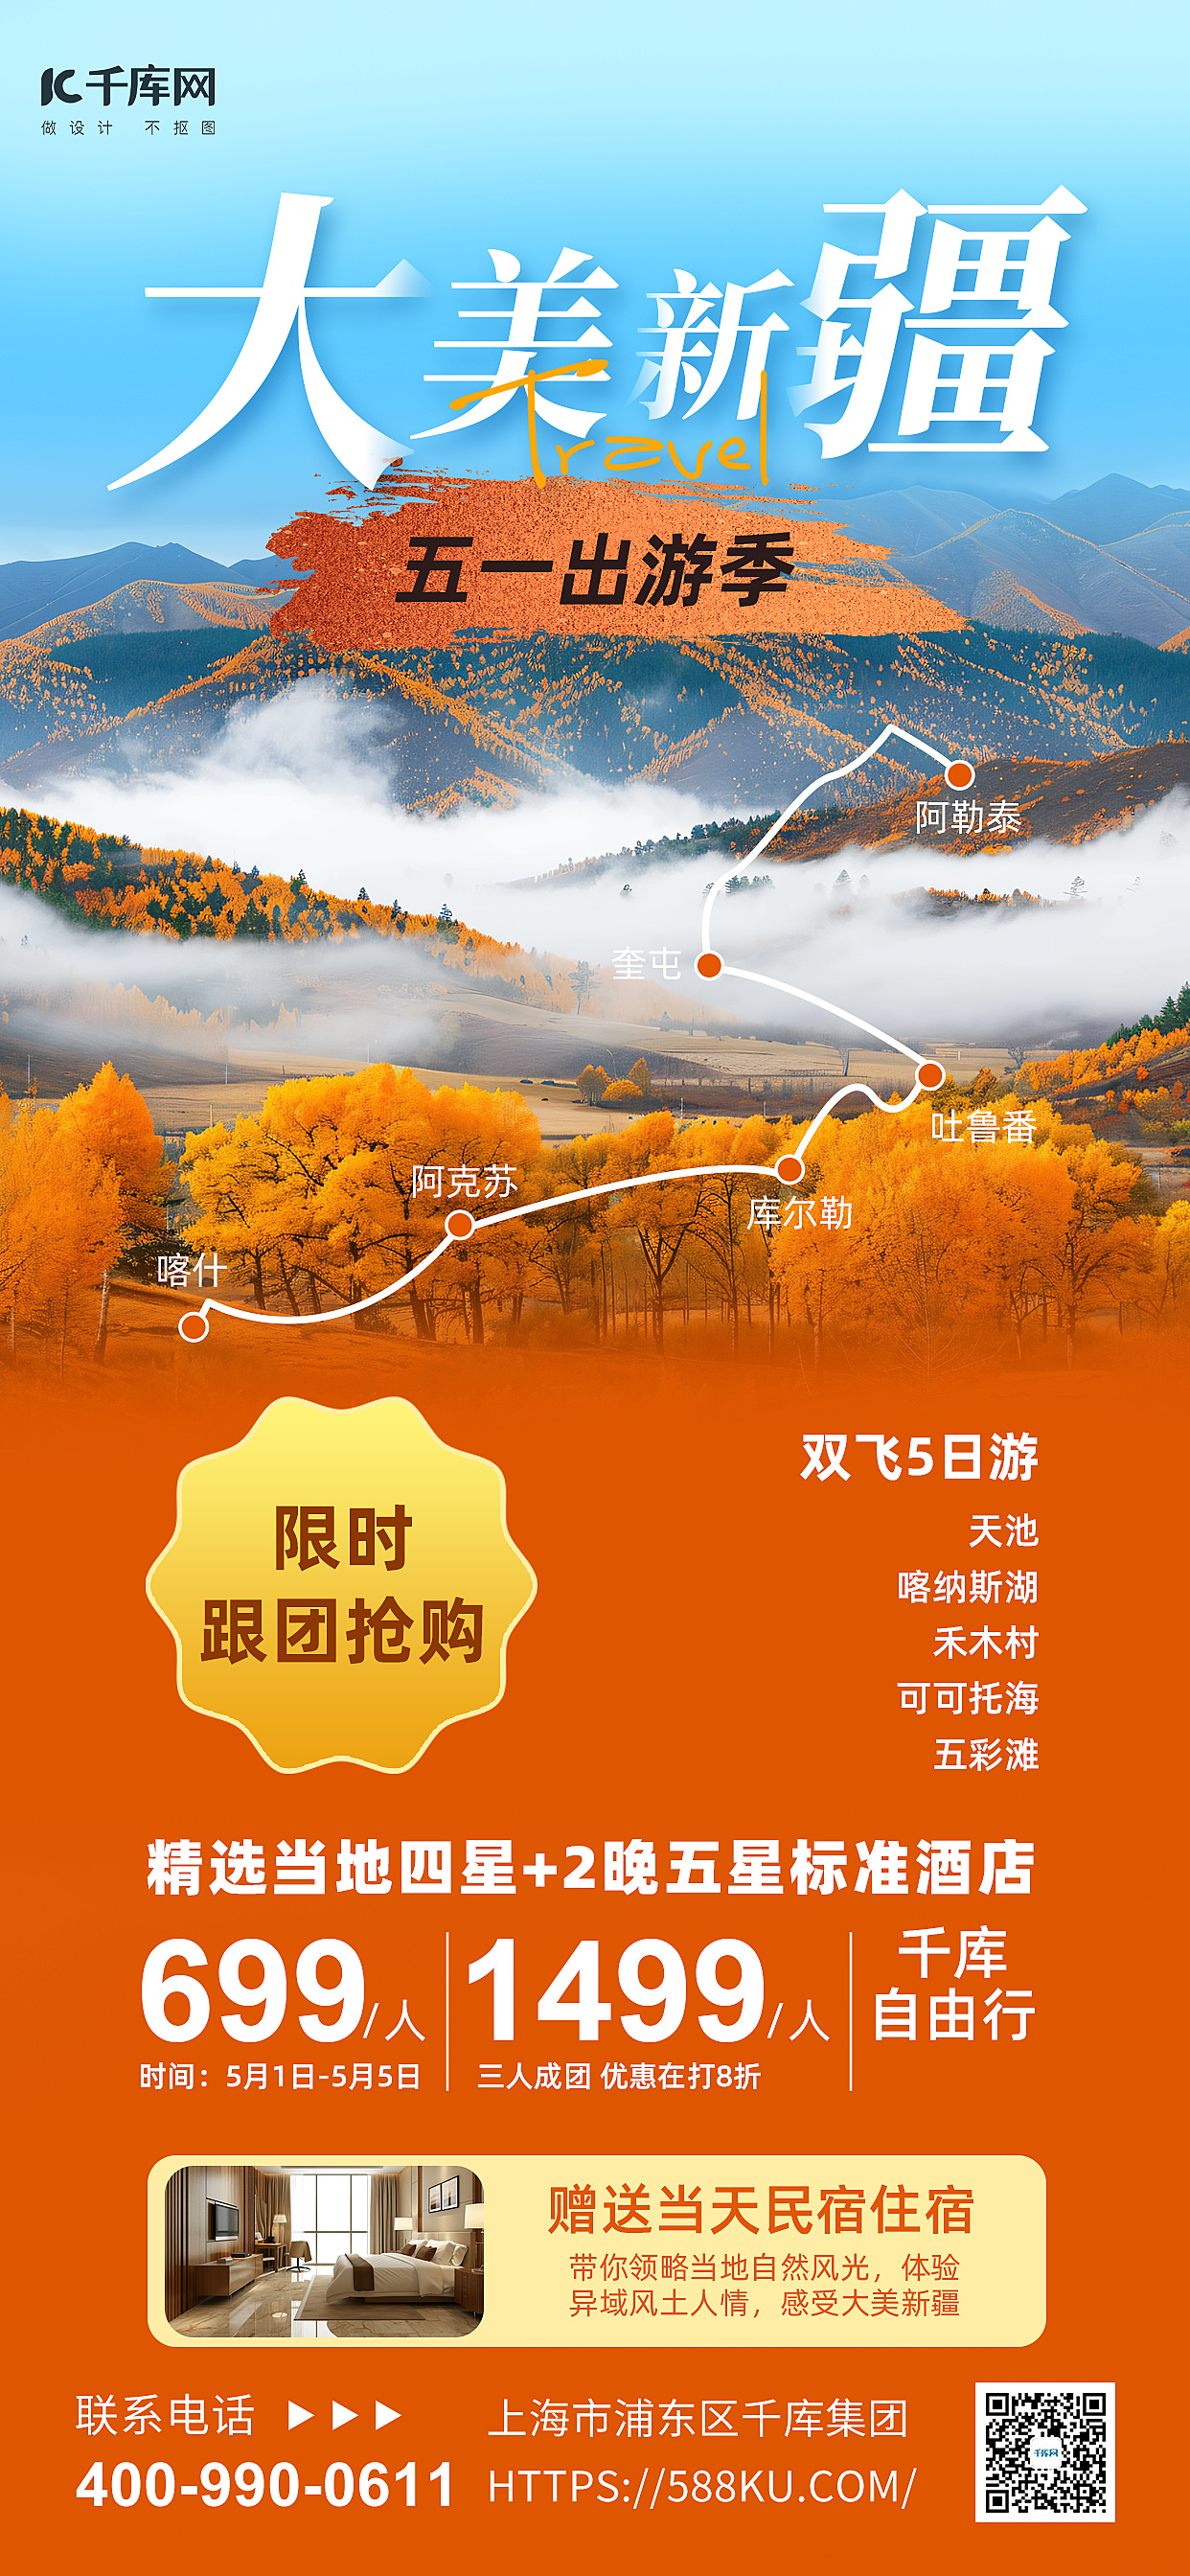 五一旅游新疆美景暖橙色简约海报海报背景素材图片